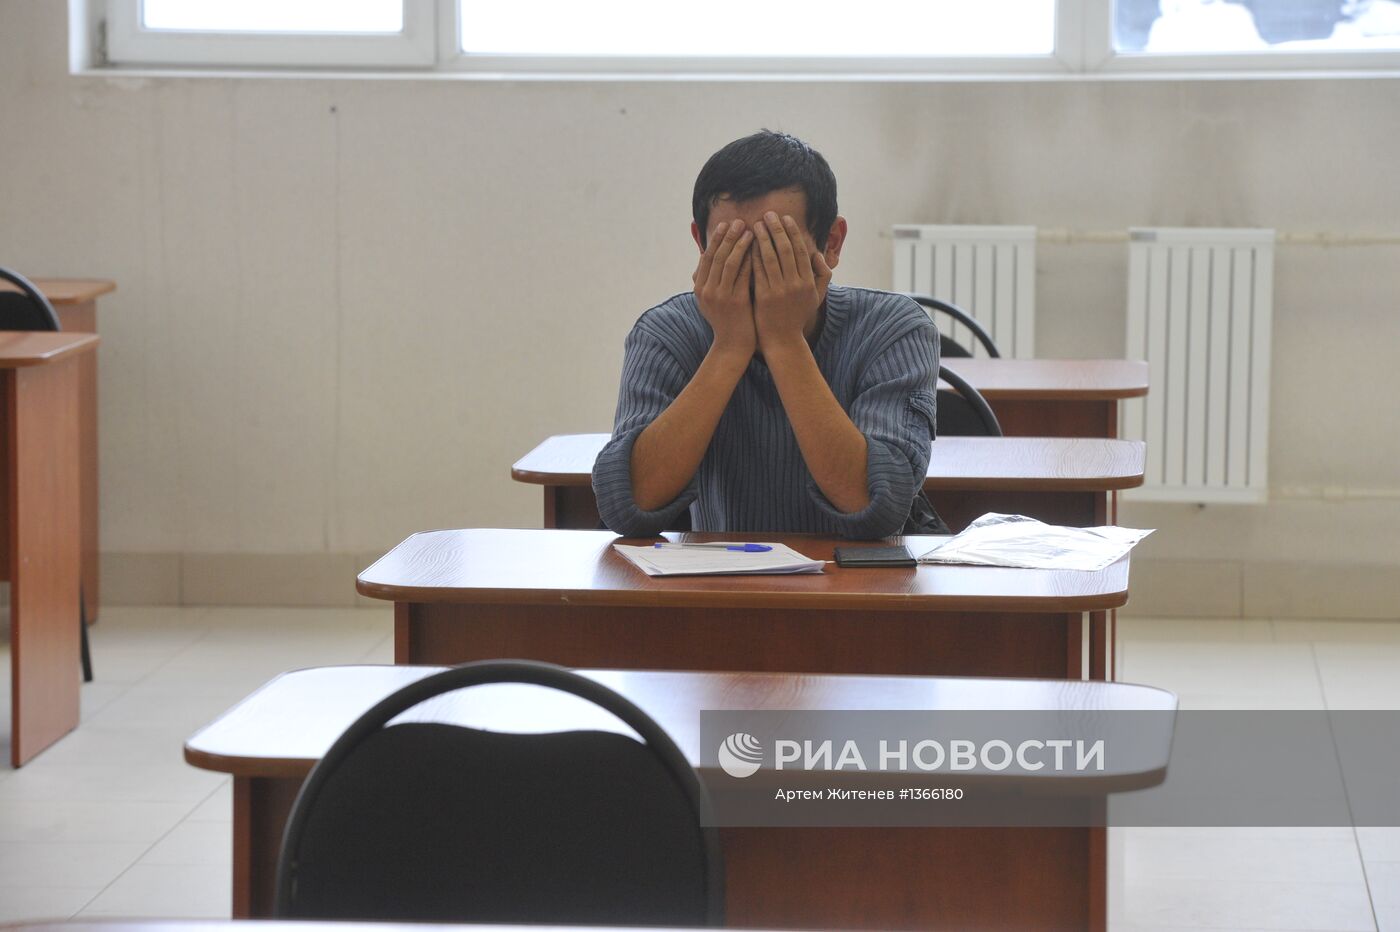 Экзамен по русскому языку для трудовых мигрантов